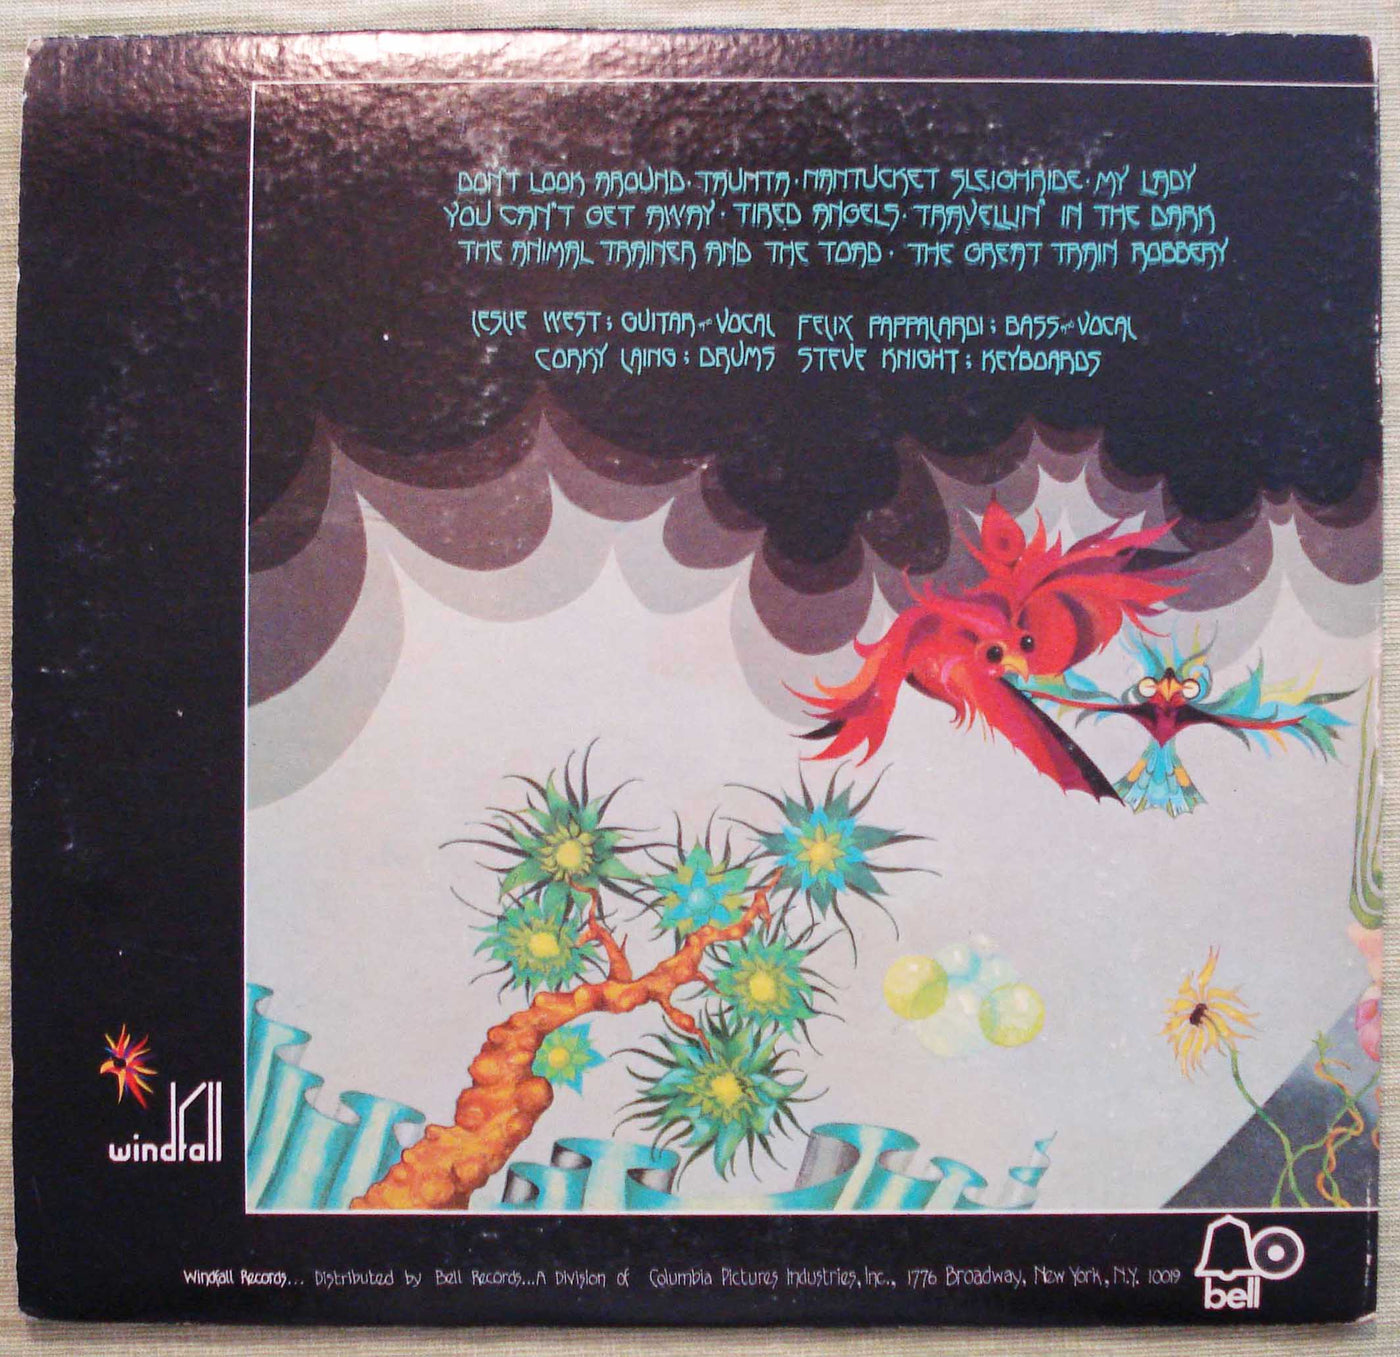 Mountain - Nantucket Sleighride (1971) Vinyl LP 33rpm 5500